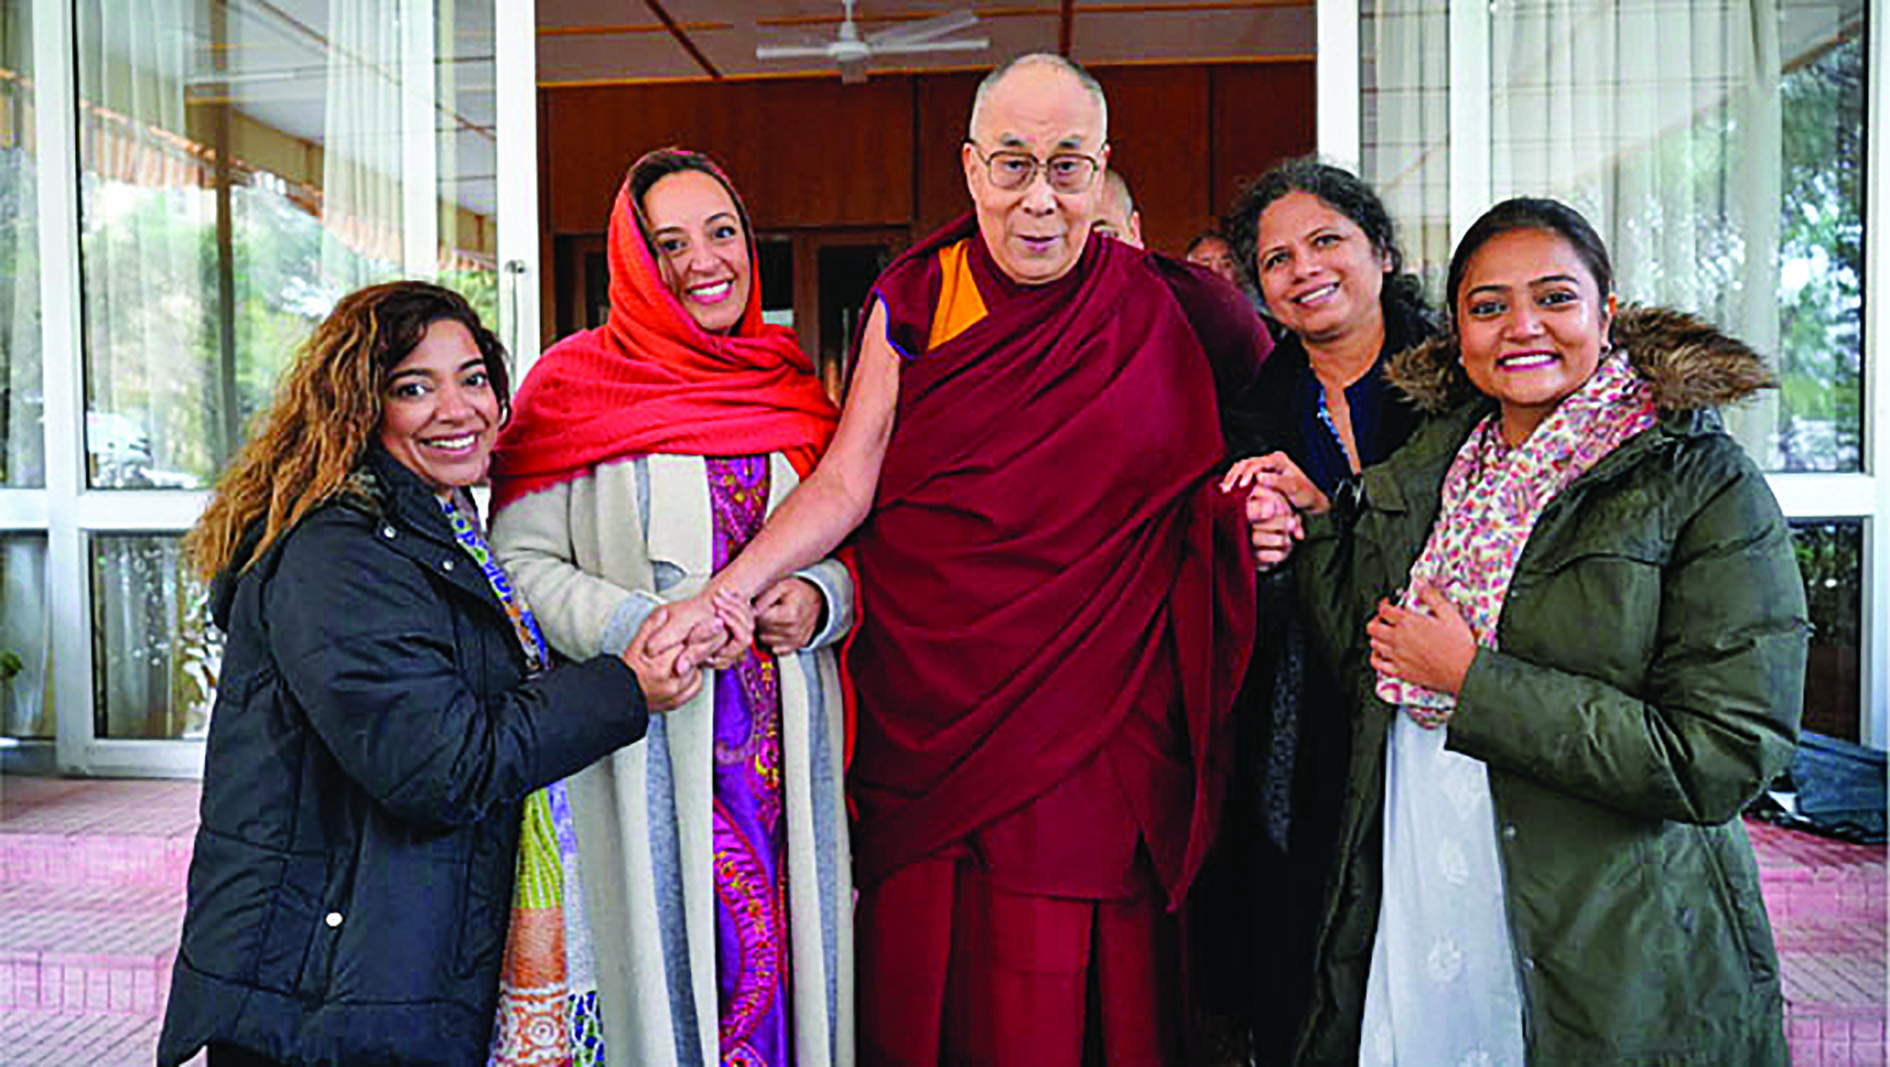 Meeting the Dalai Lama and sharing a global vision